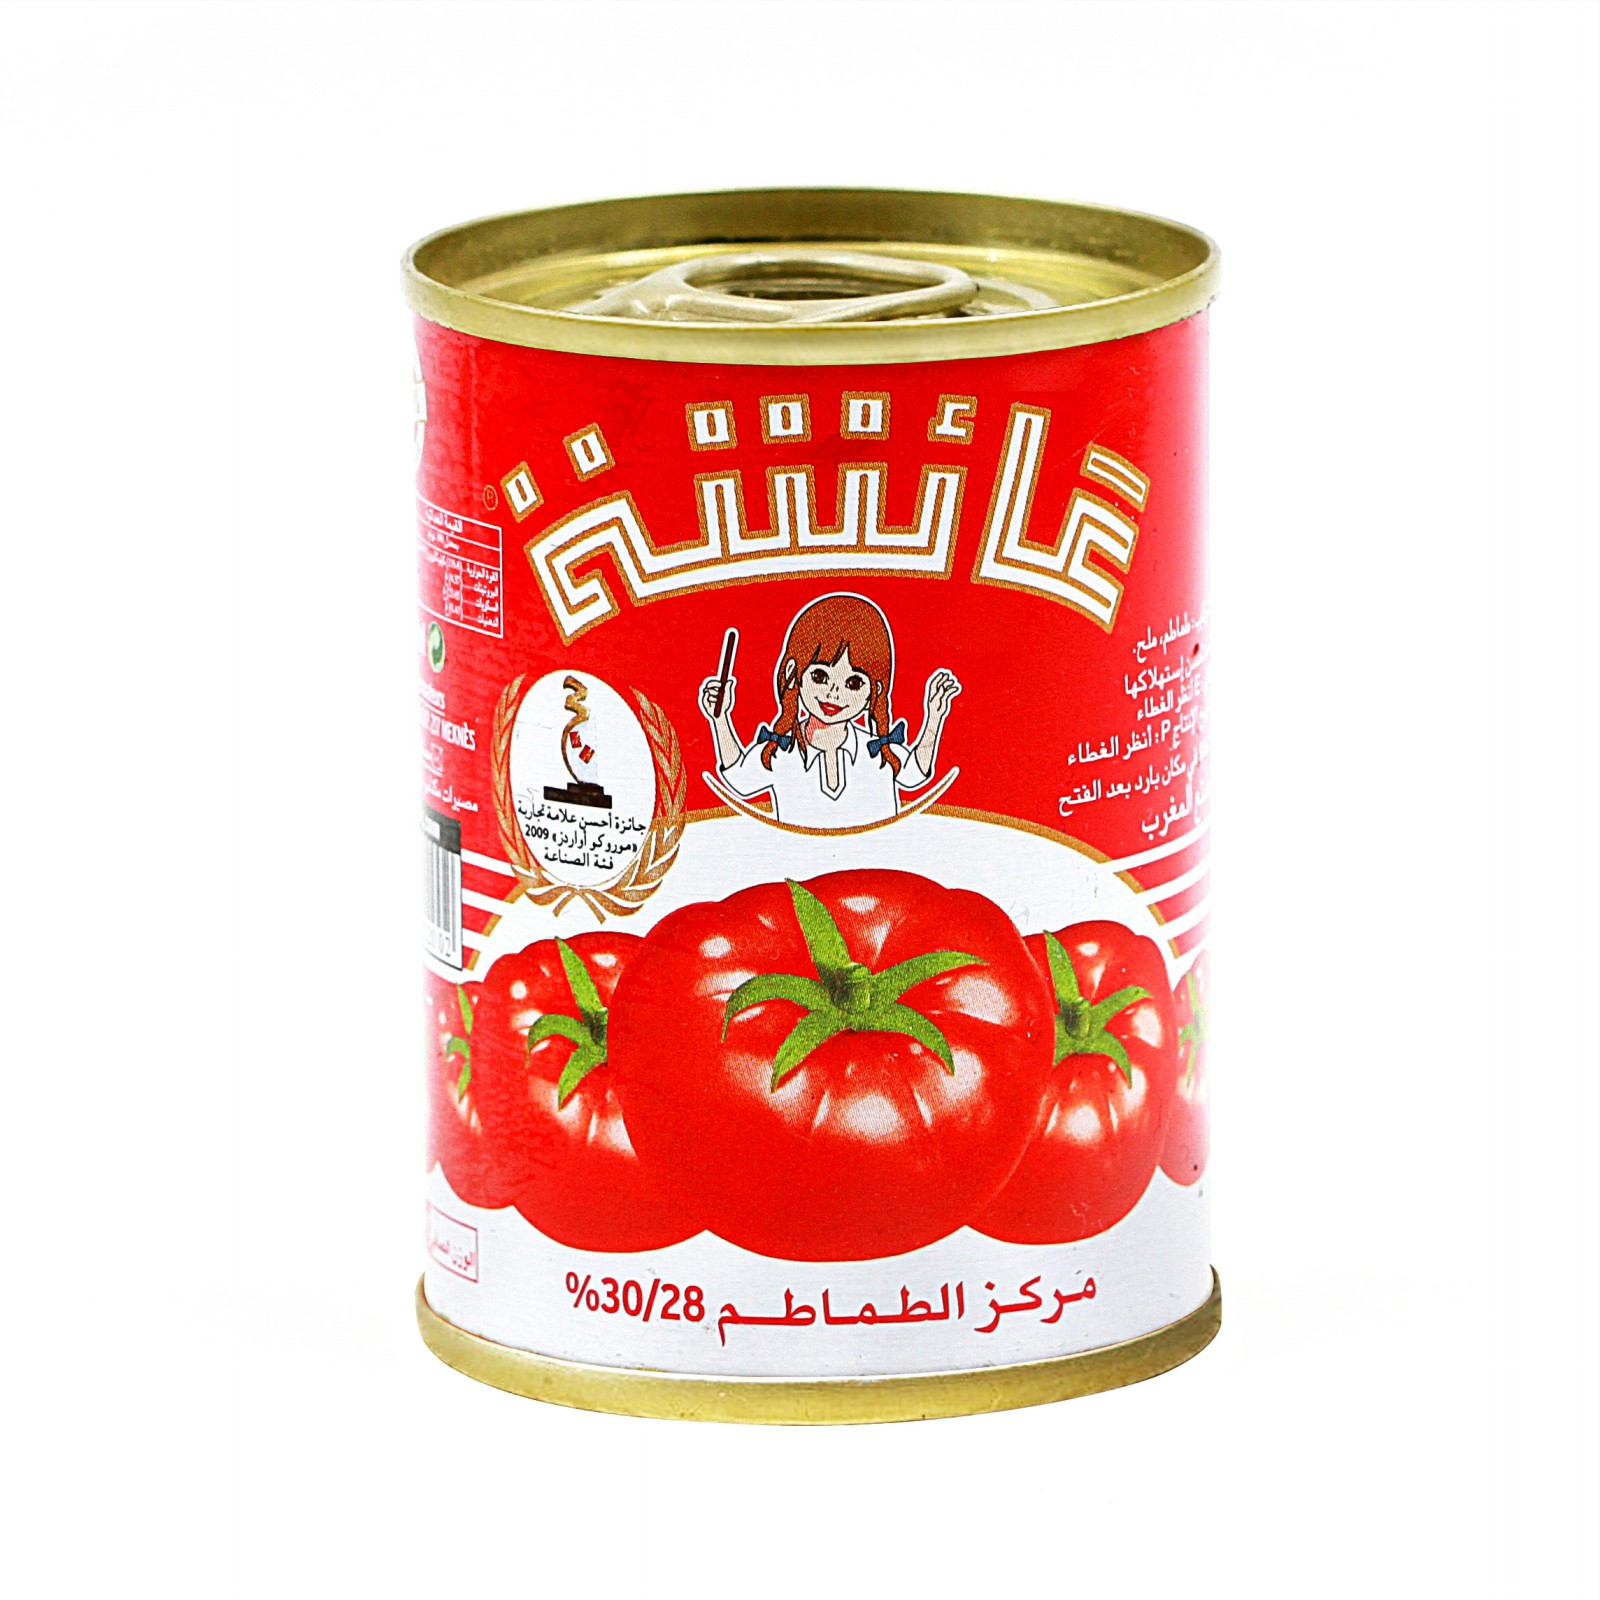 double concentré de tomate/ halal food service/allimentation halal